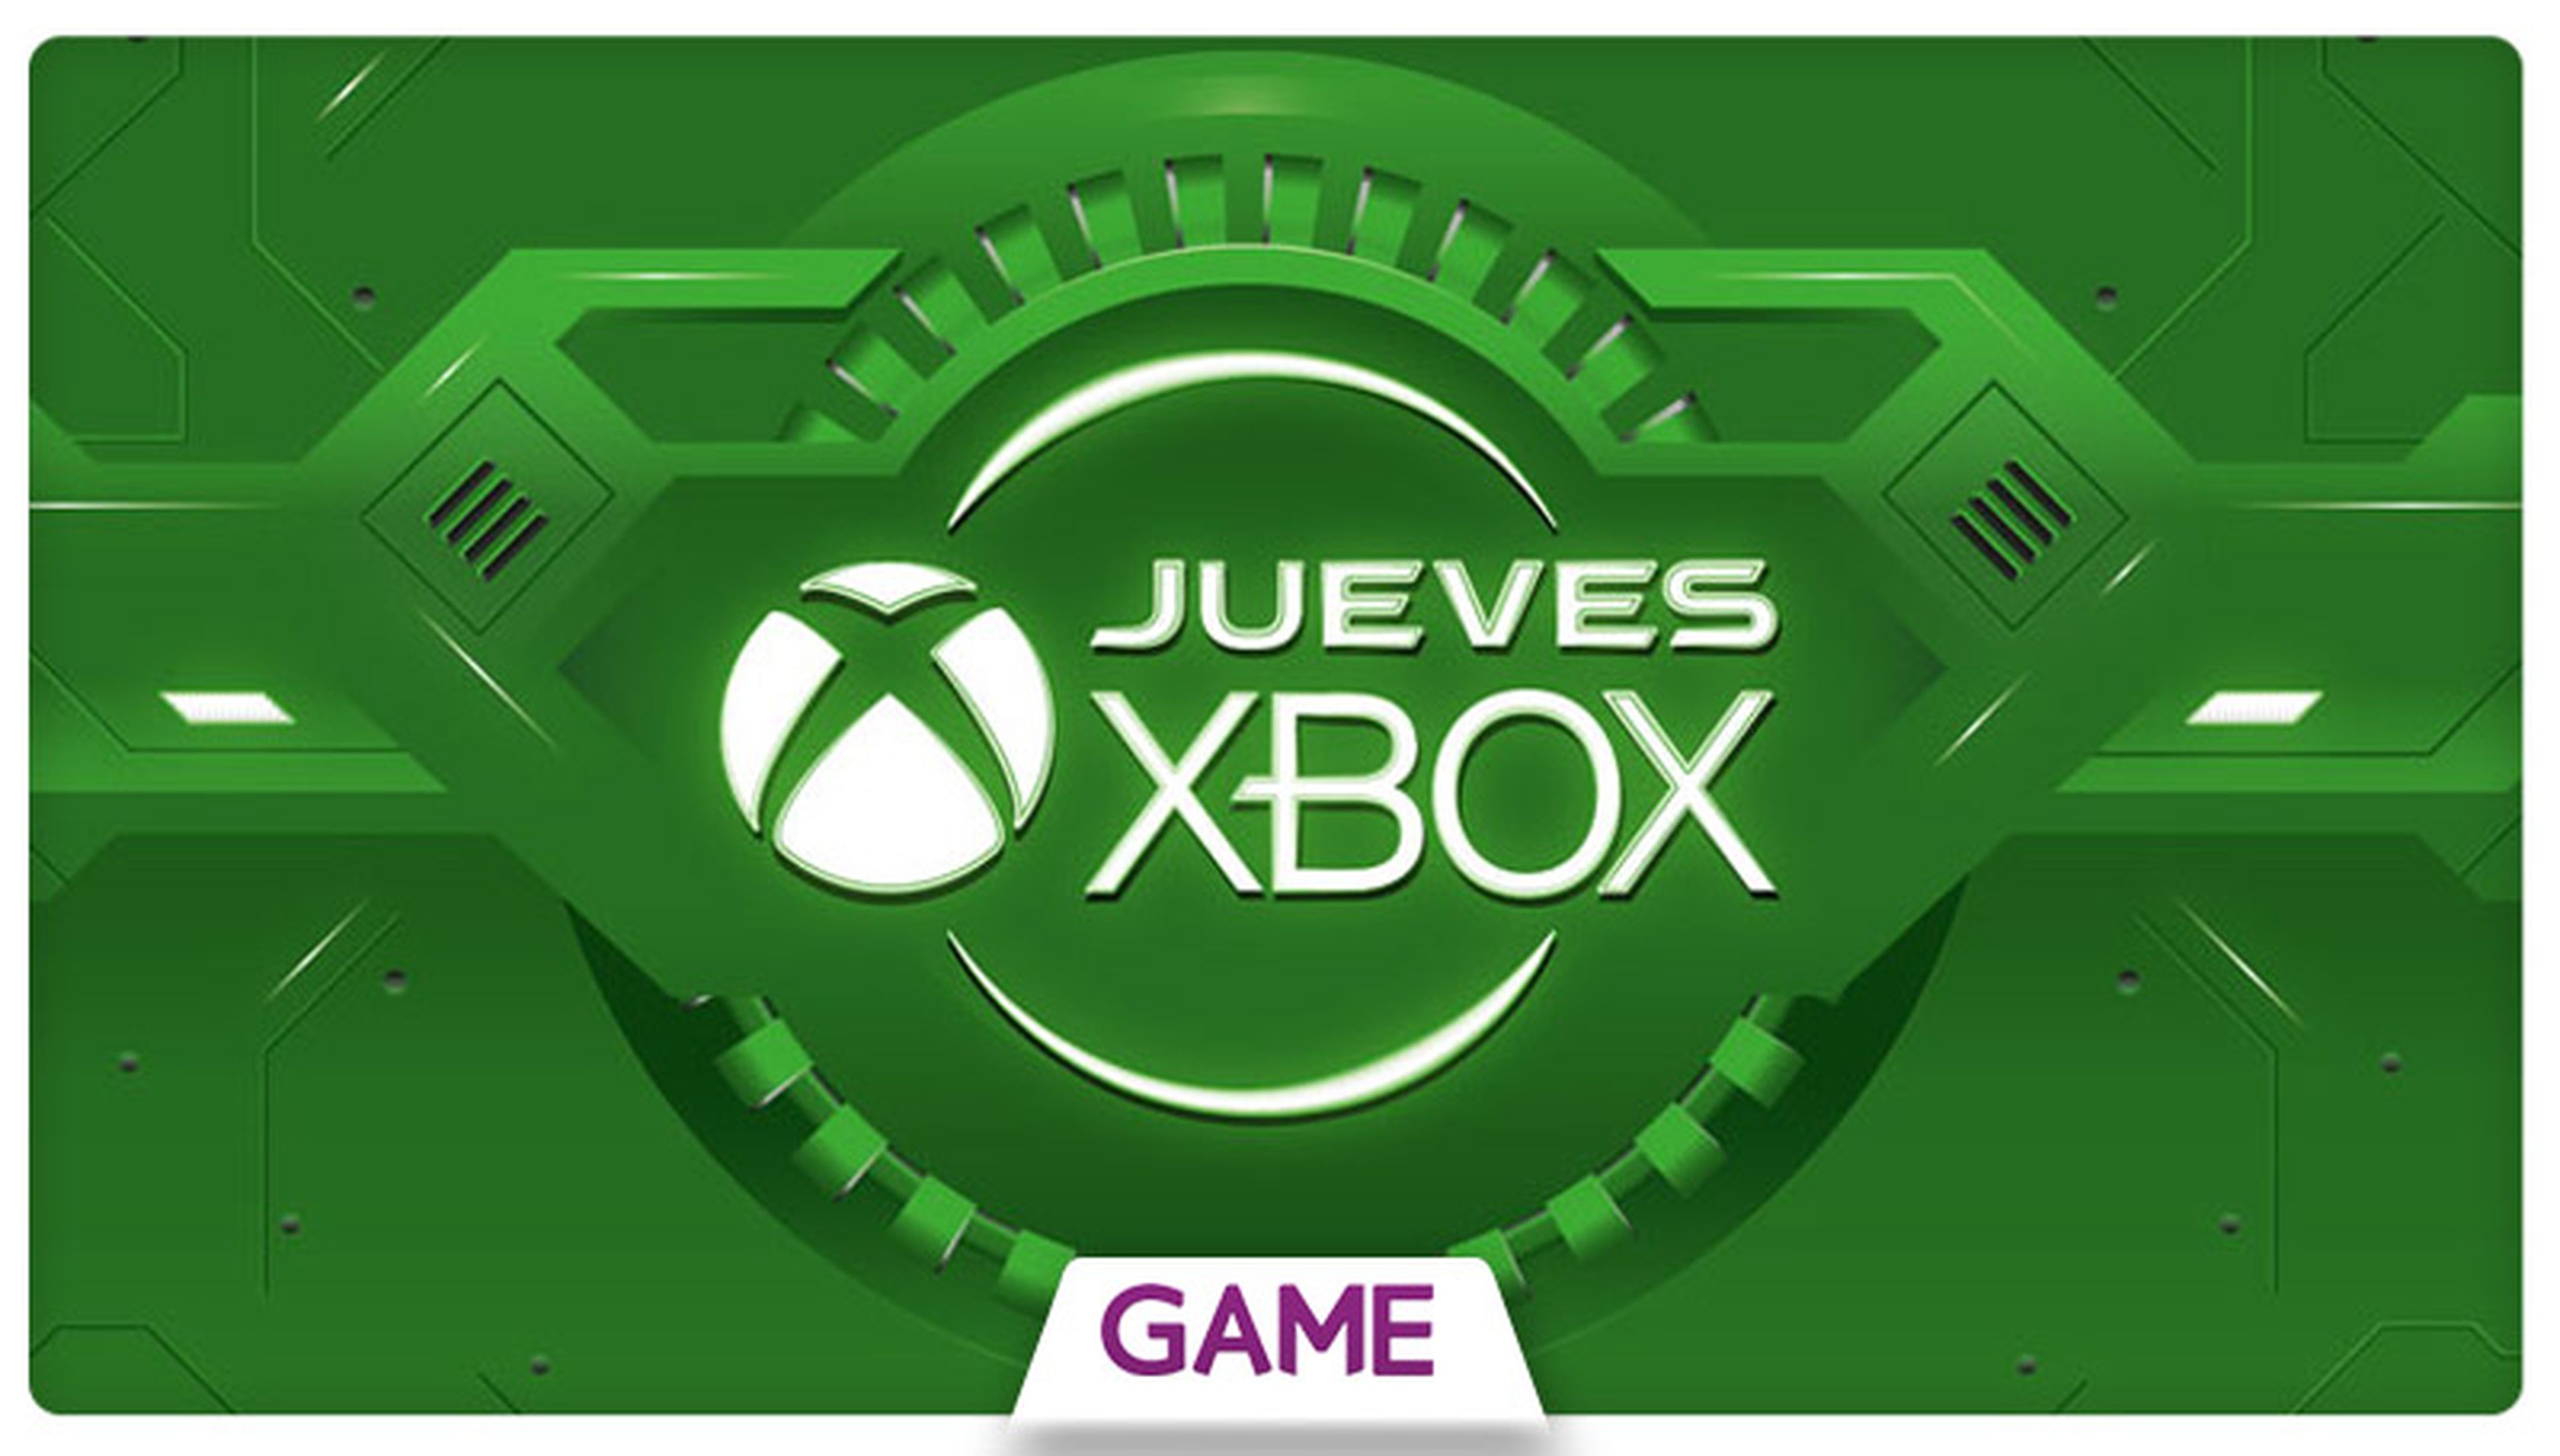 Jueves Xbox en GAME: Ofertas del 24/09/2015